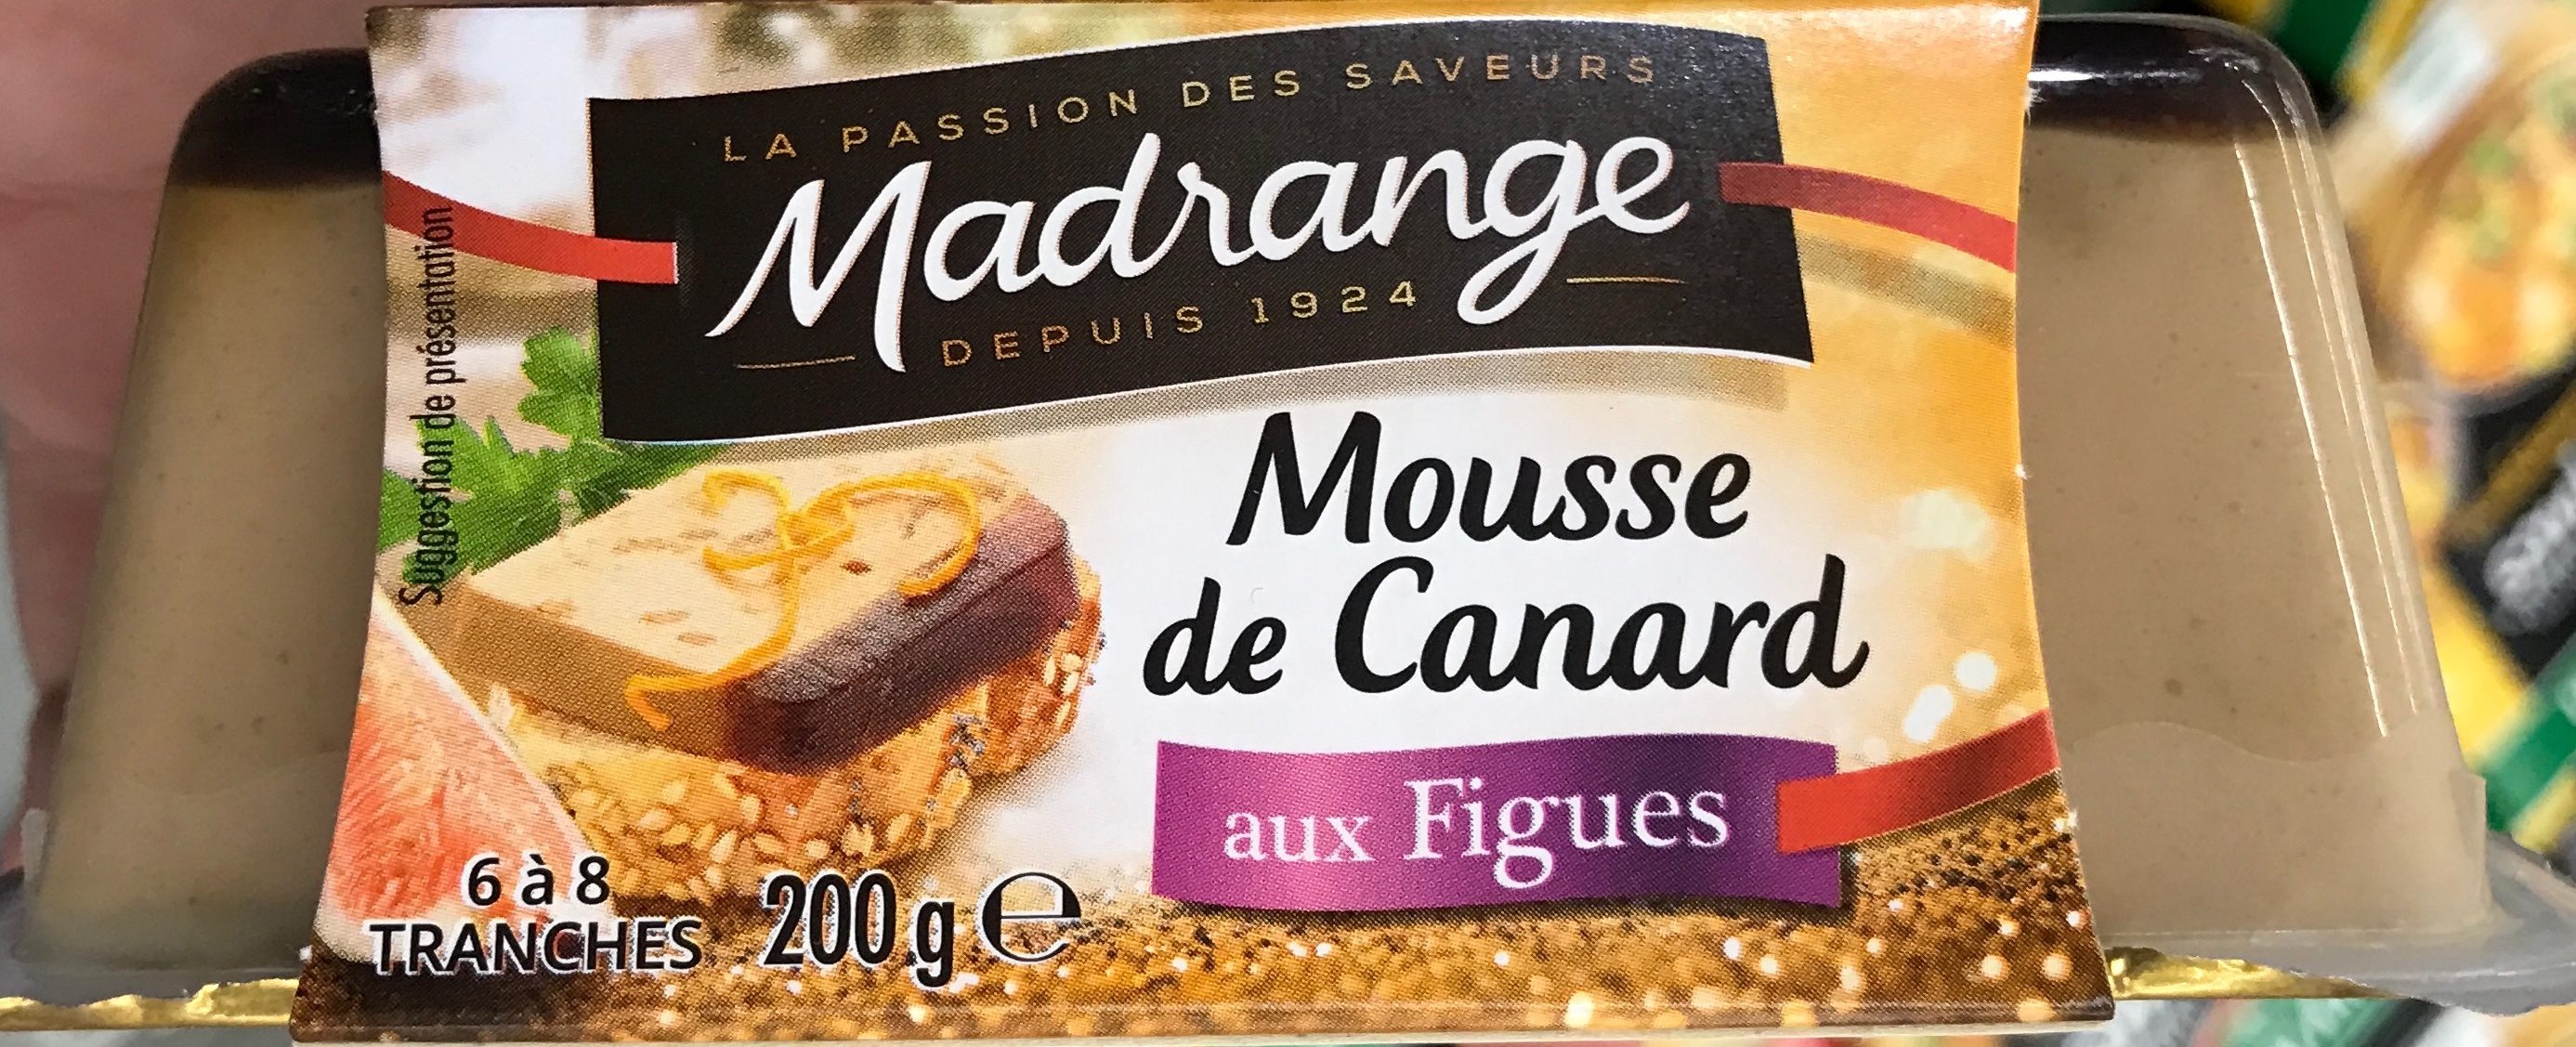 Mousse de Canard aux Figues - Product - fr